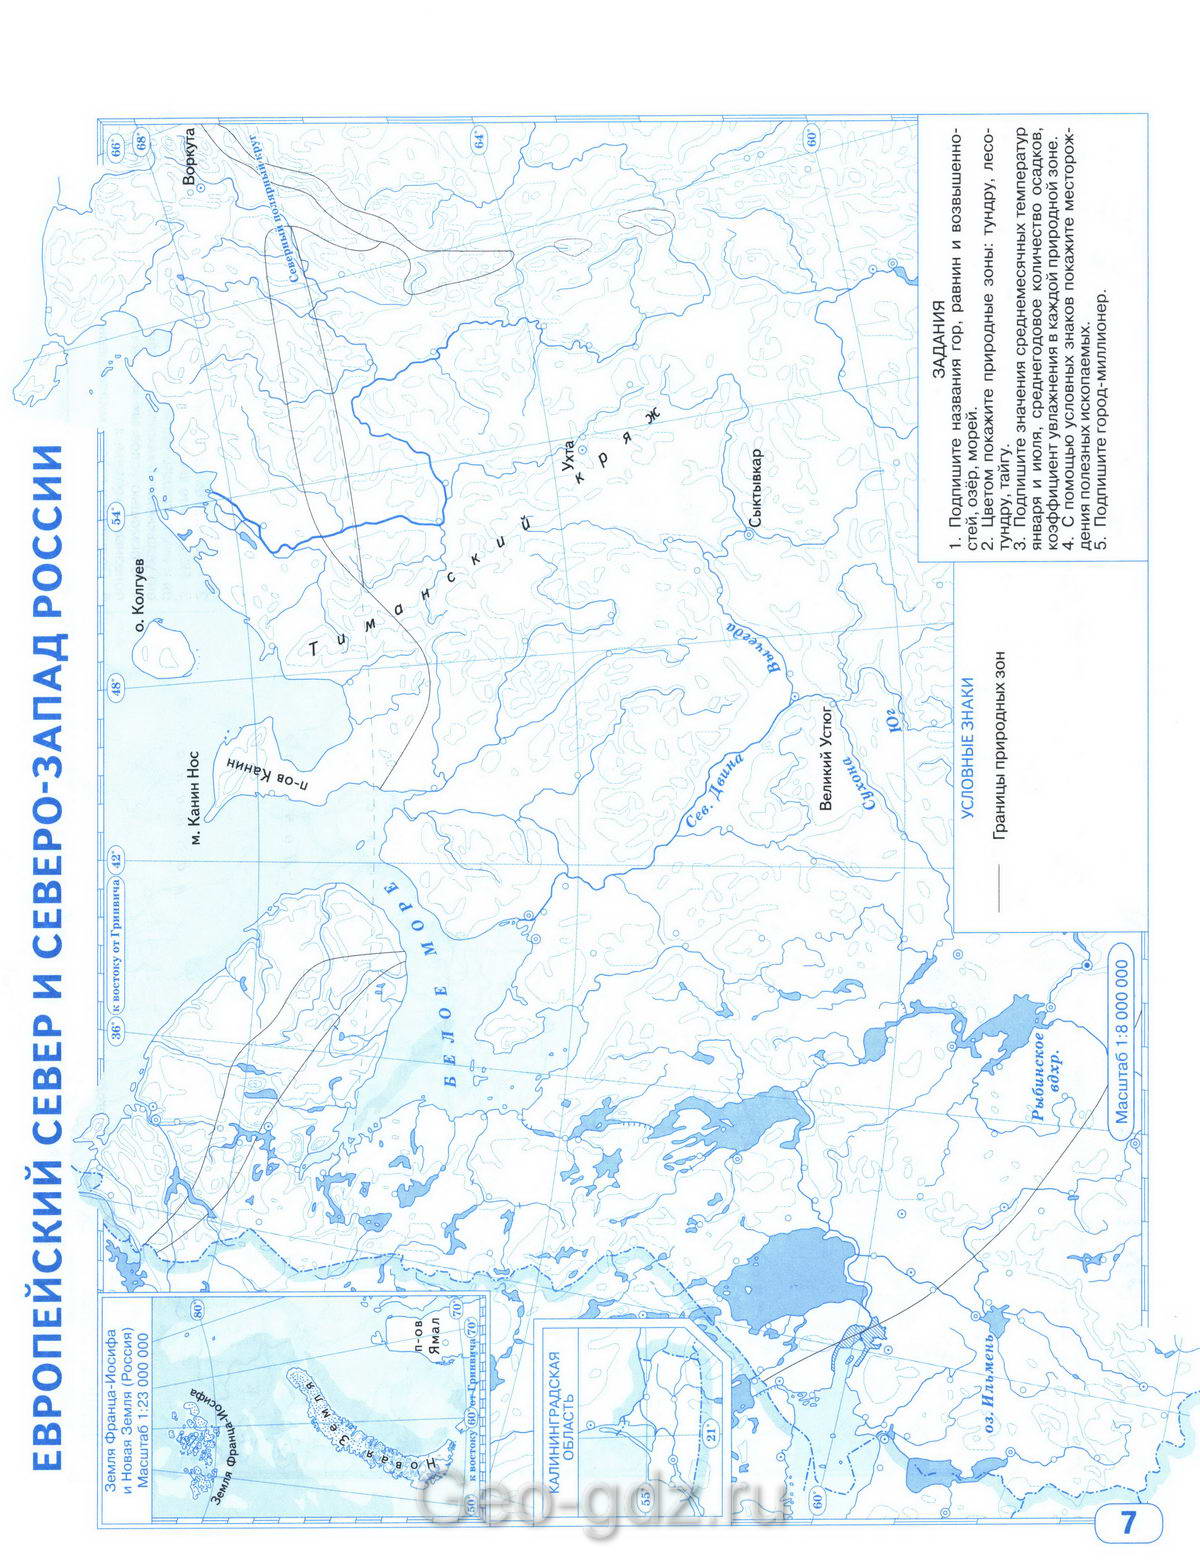 Европейский Север и Северо-Запад России - контурная карта по географии 8класс стр 7 - Решебник